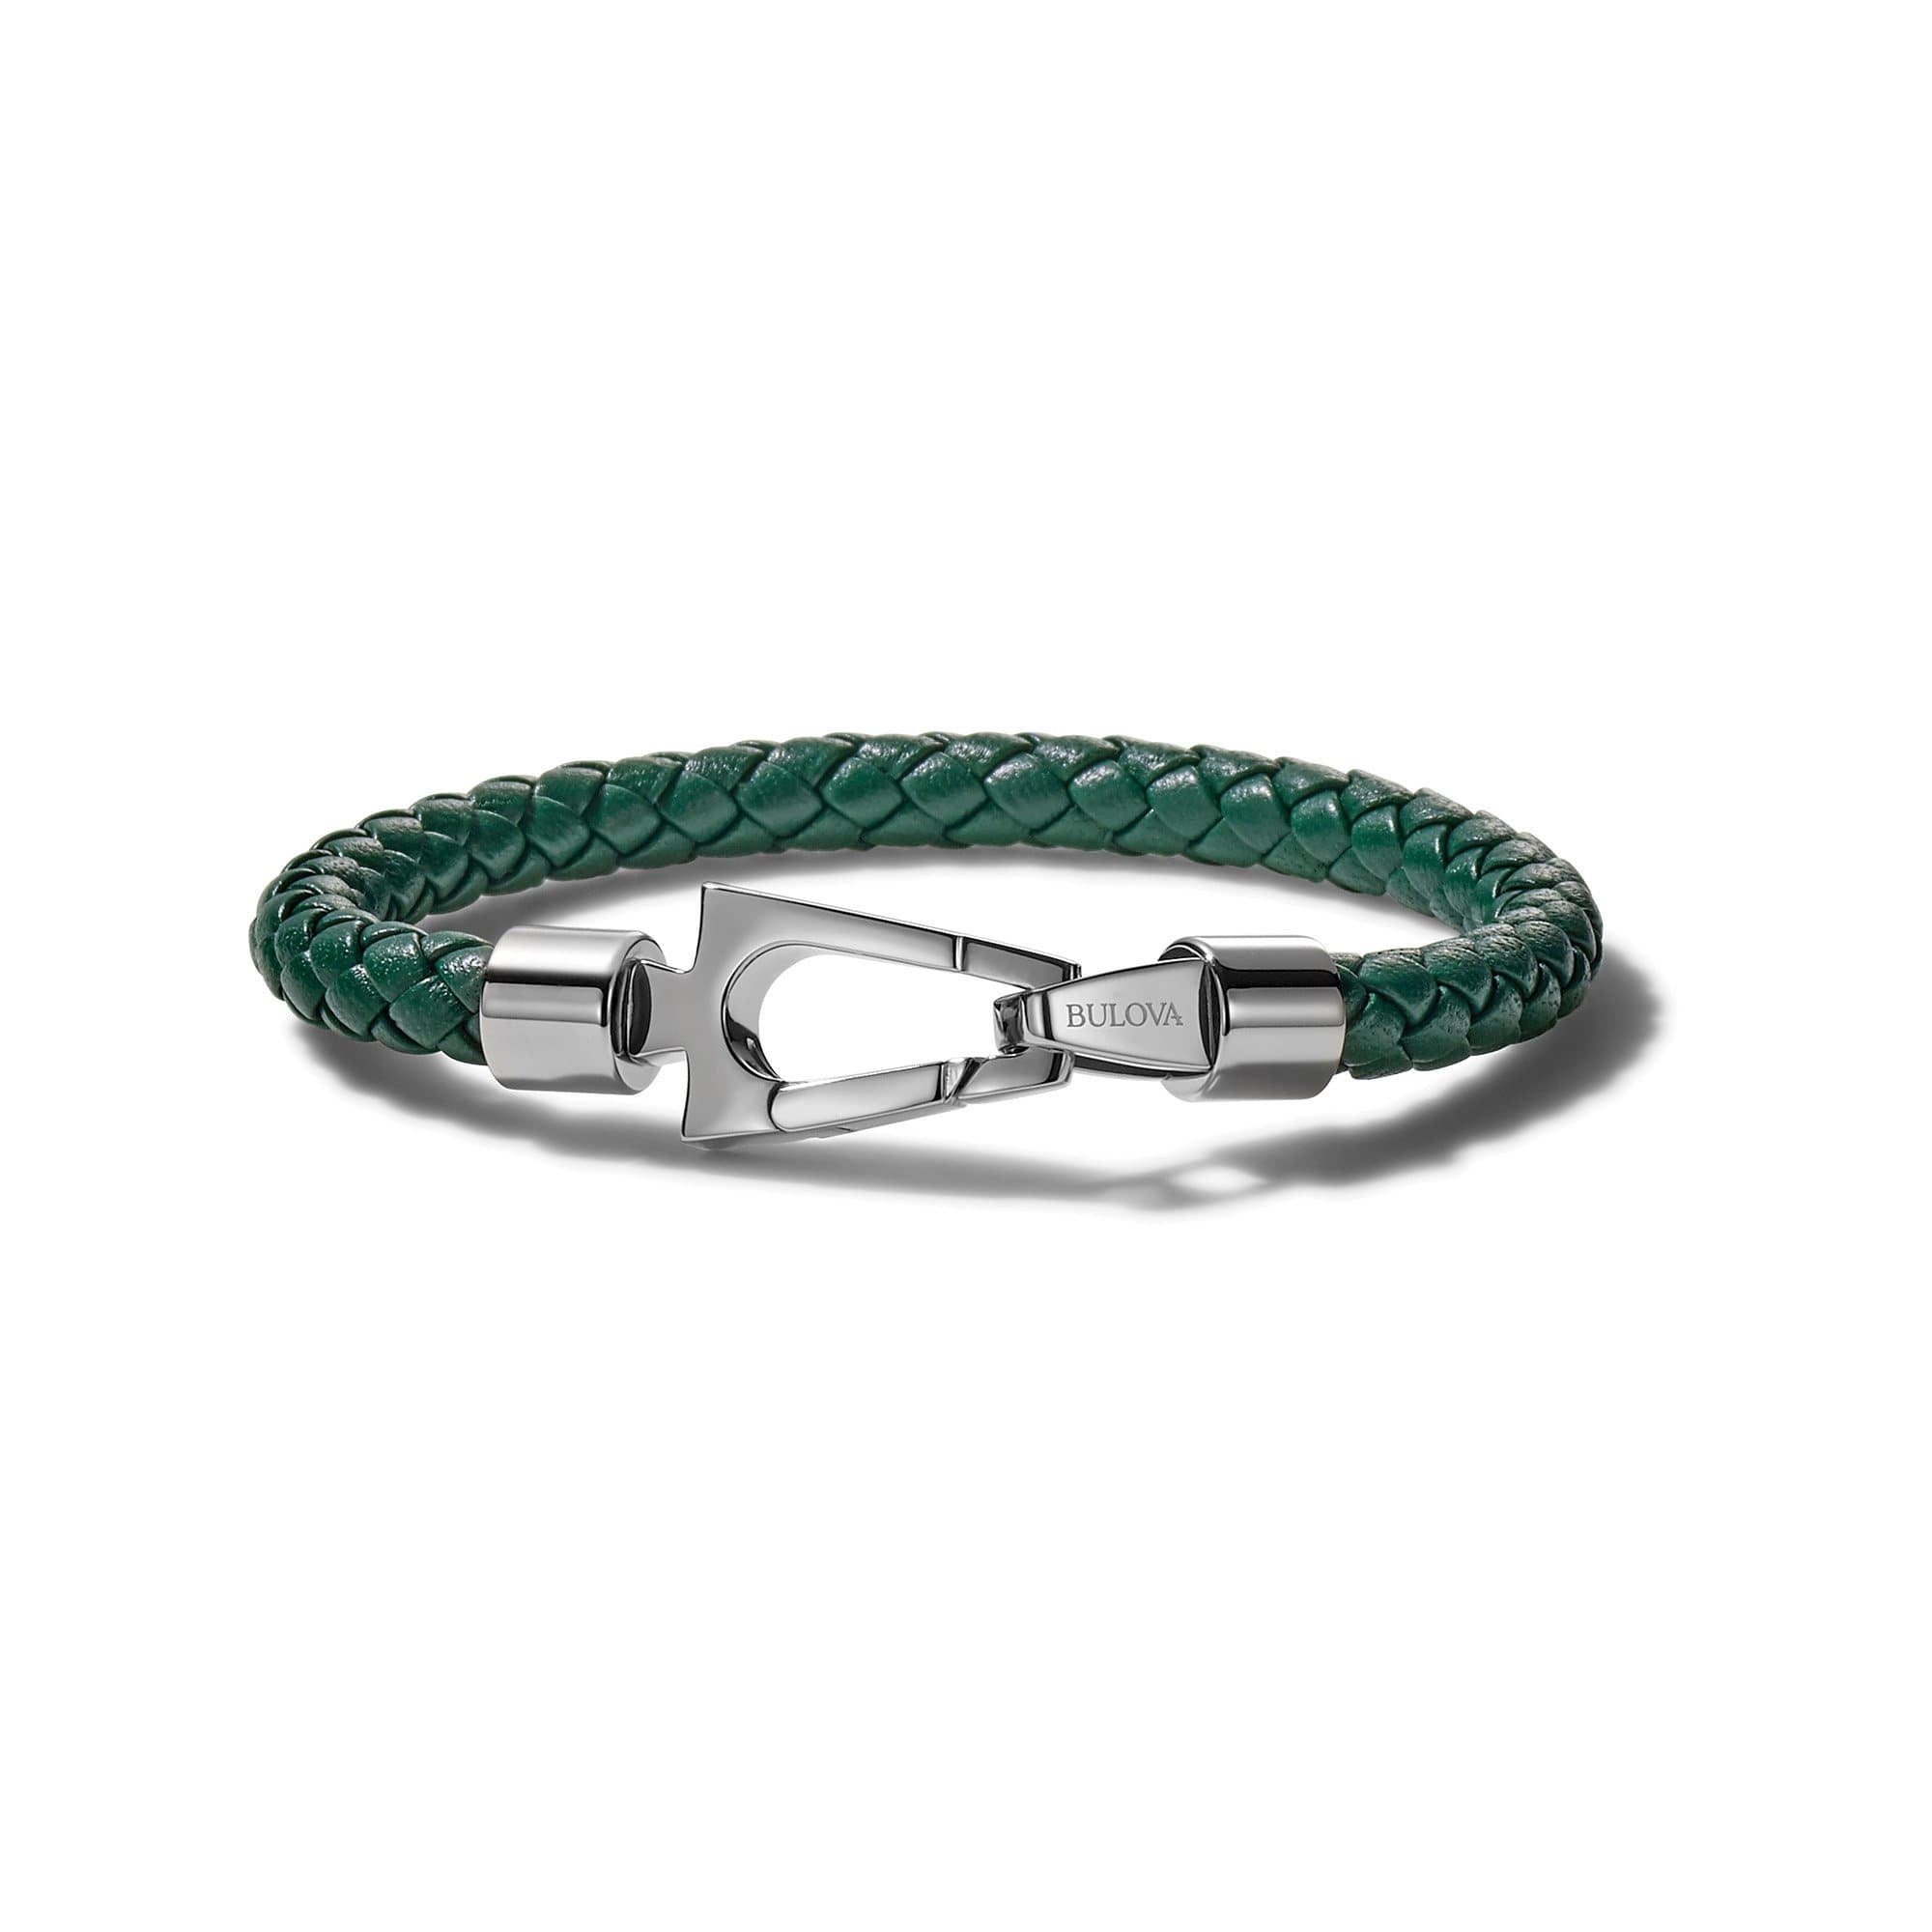 Buy jewel string Evil Eye Green Cord Adjustable Bracelet for Avoid Negative  Energy for Girls Boys Men Women (Green) at Amazon.in